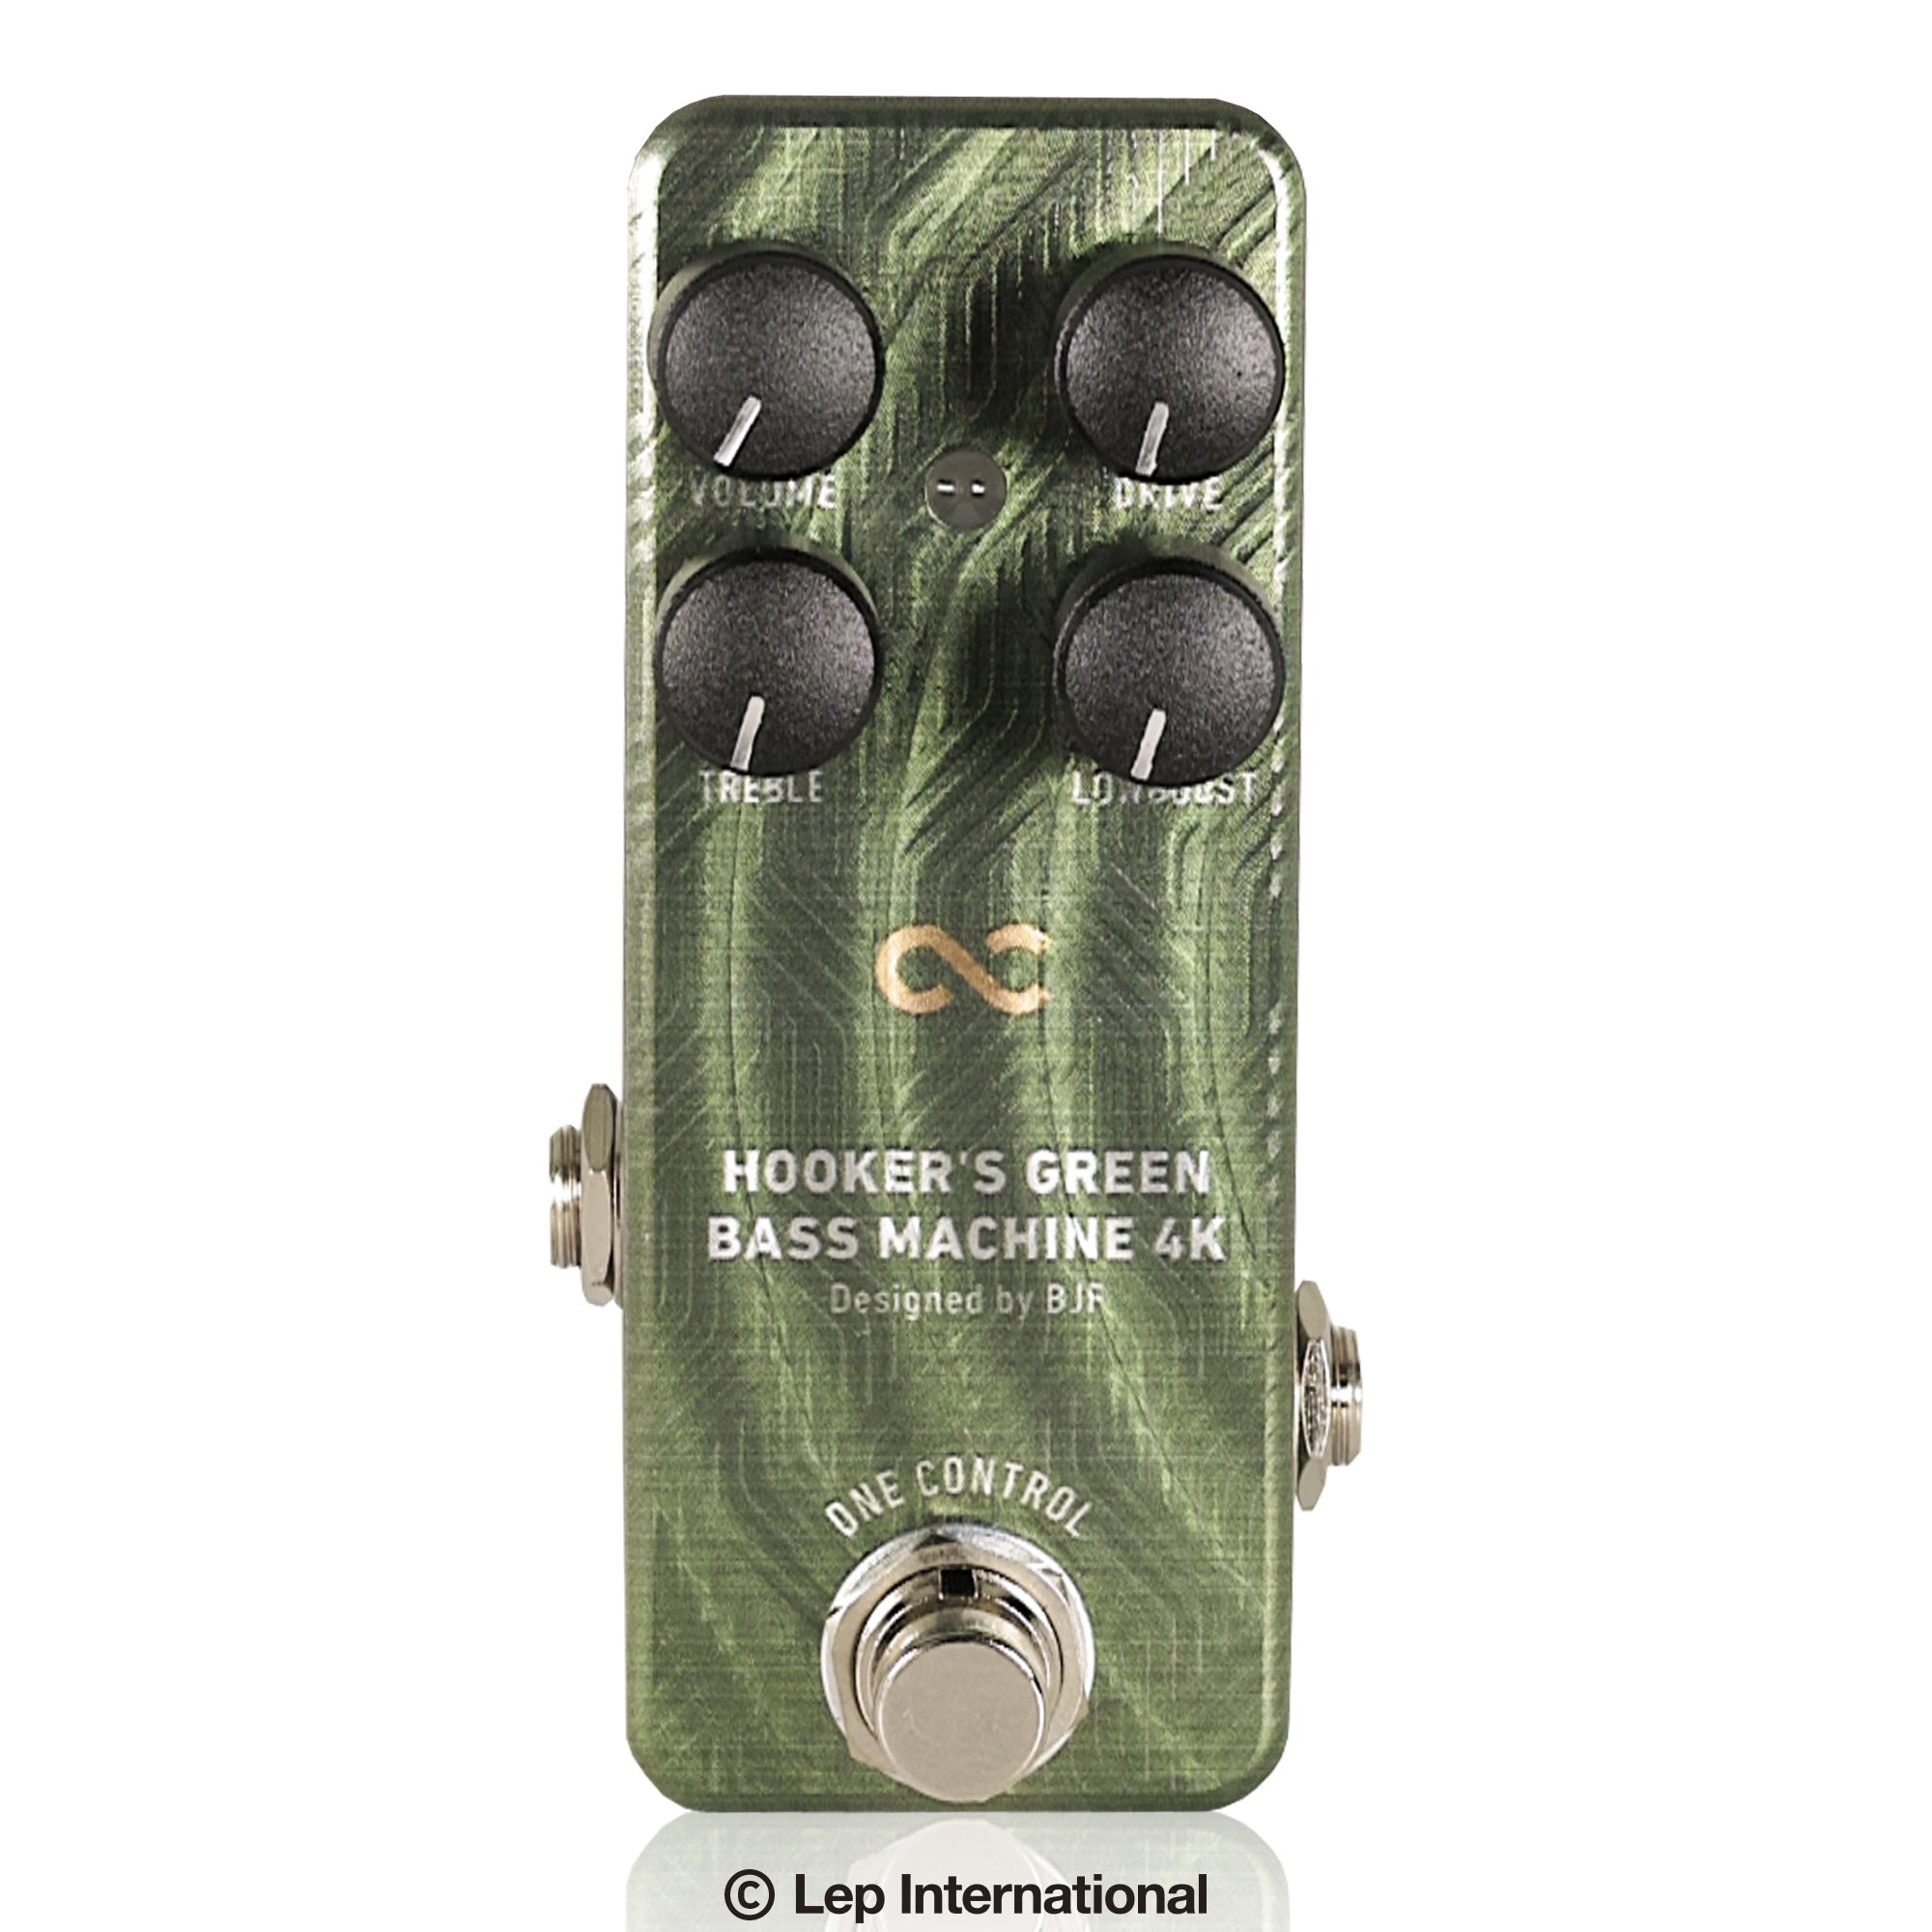 OneControl / Hooker's Green Bassmachine